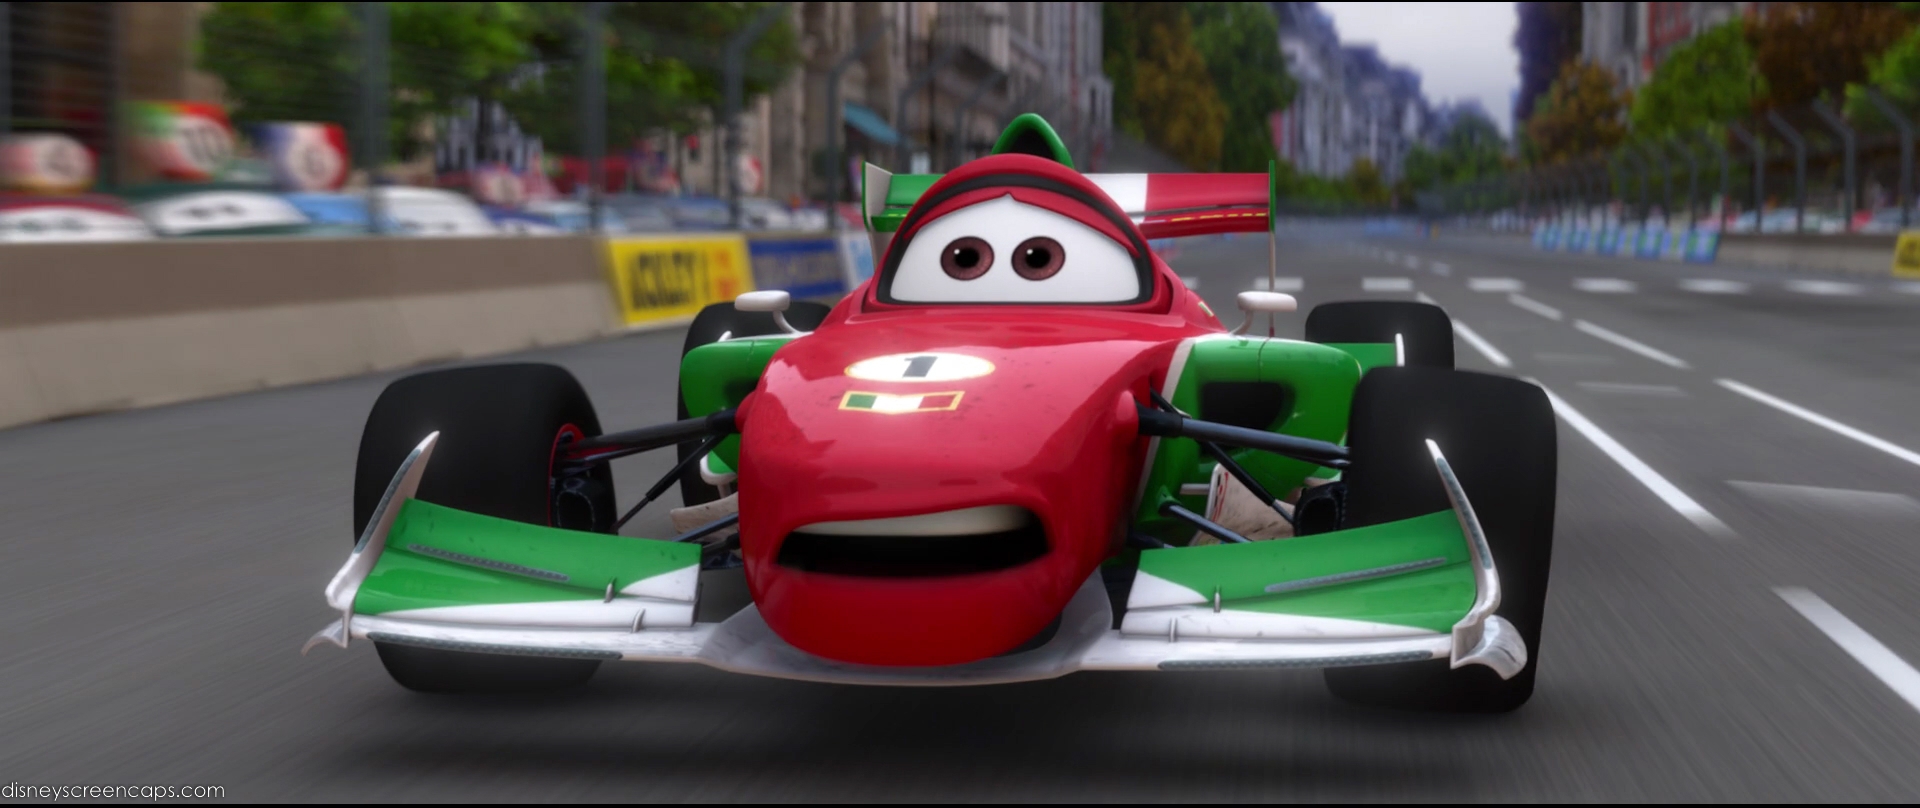 Image - Cars2-disneyscreencaps com-9846.jpg - Pixar Wiki - Disney Pixar ...